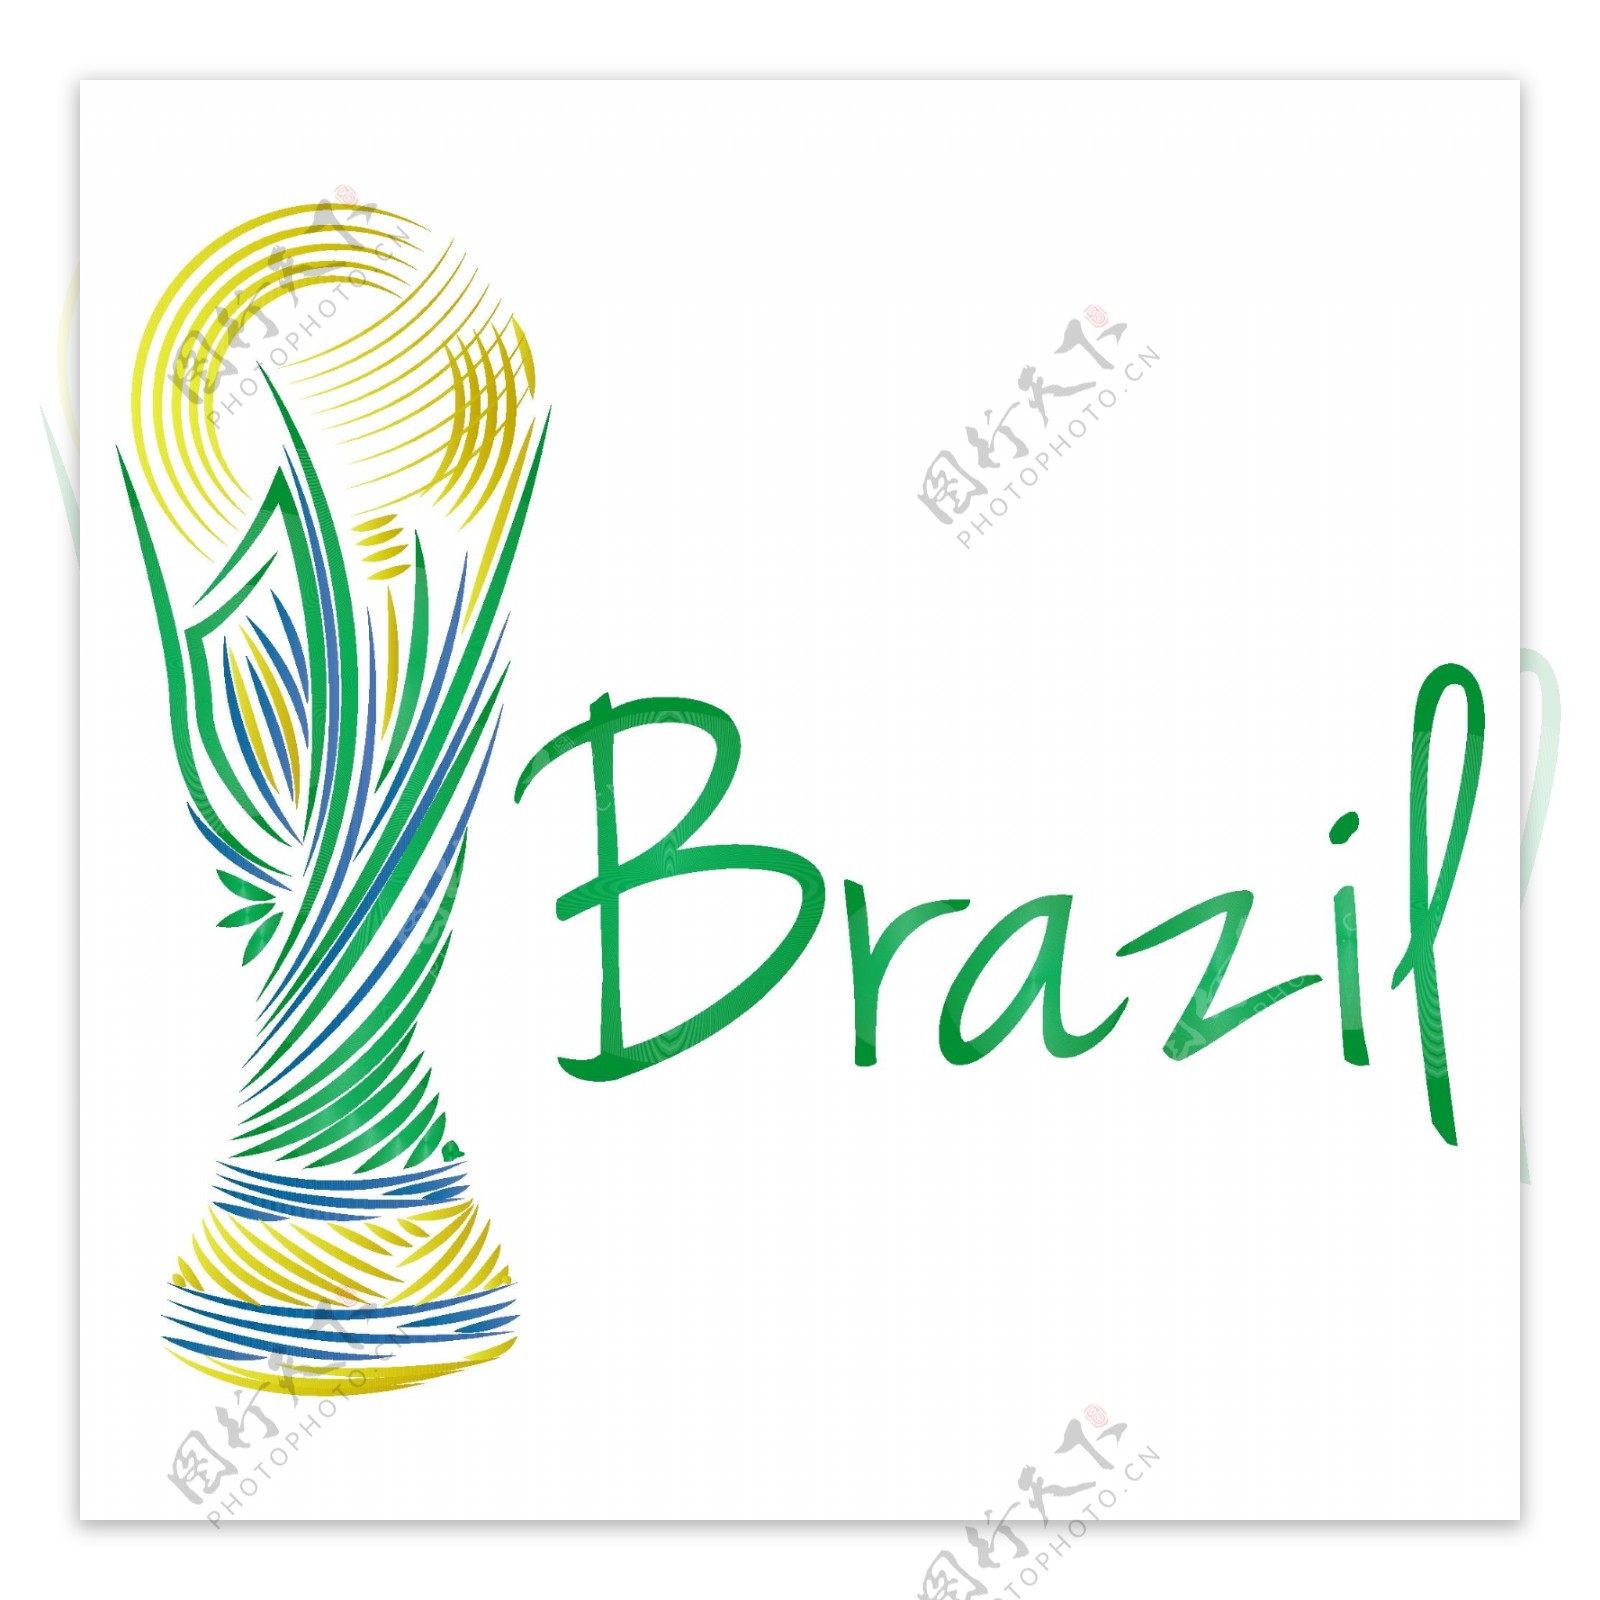 巴西2014个吉祥物矢量